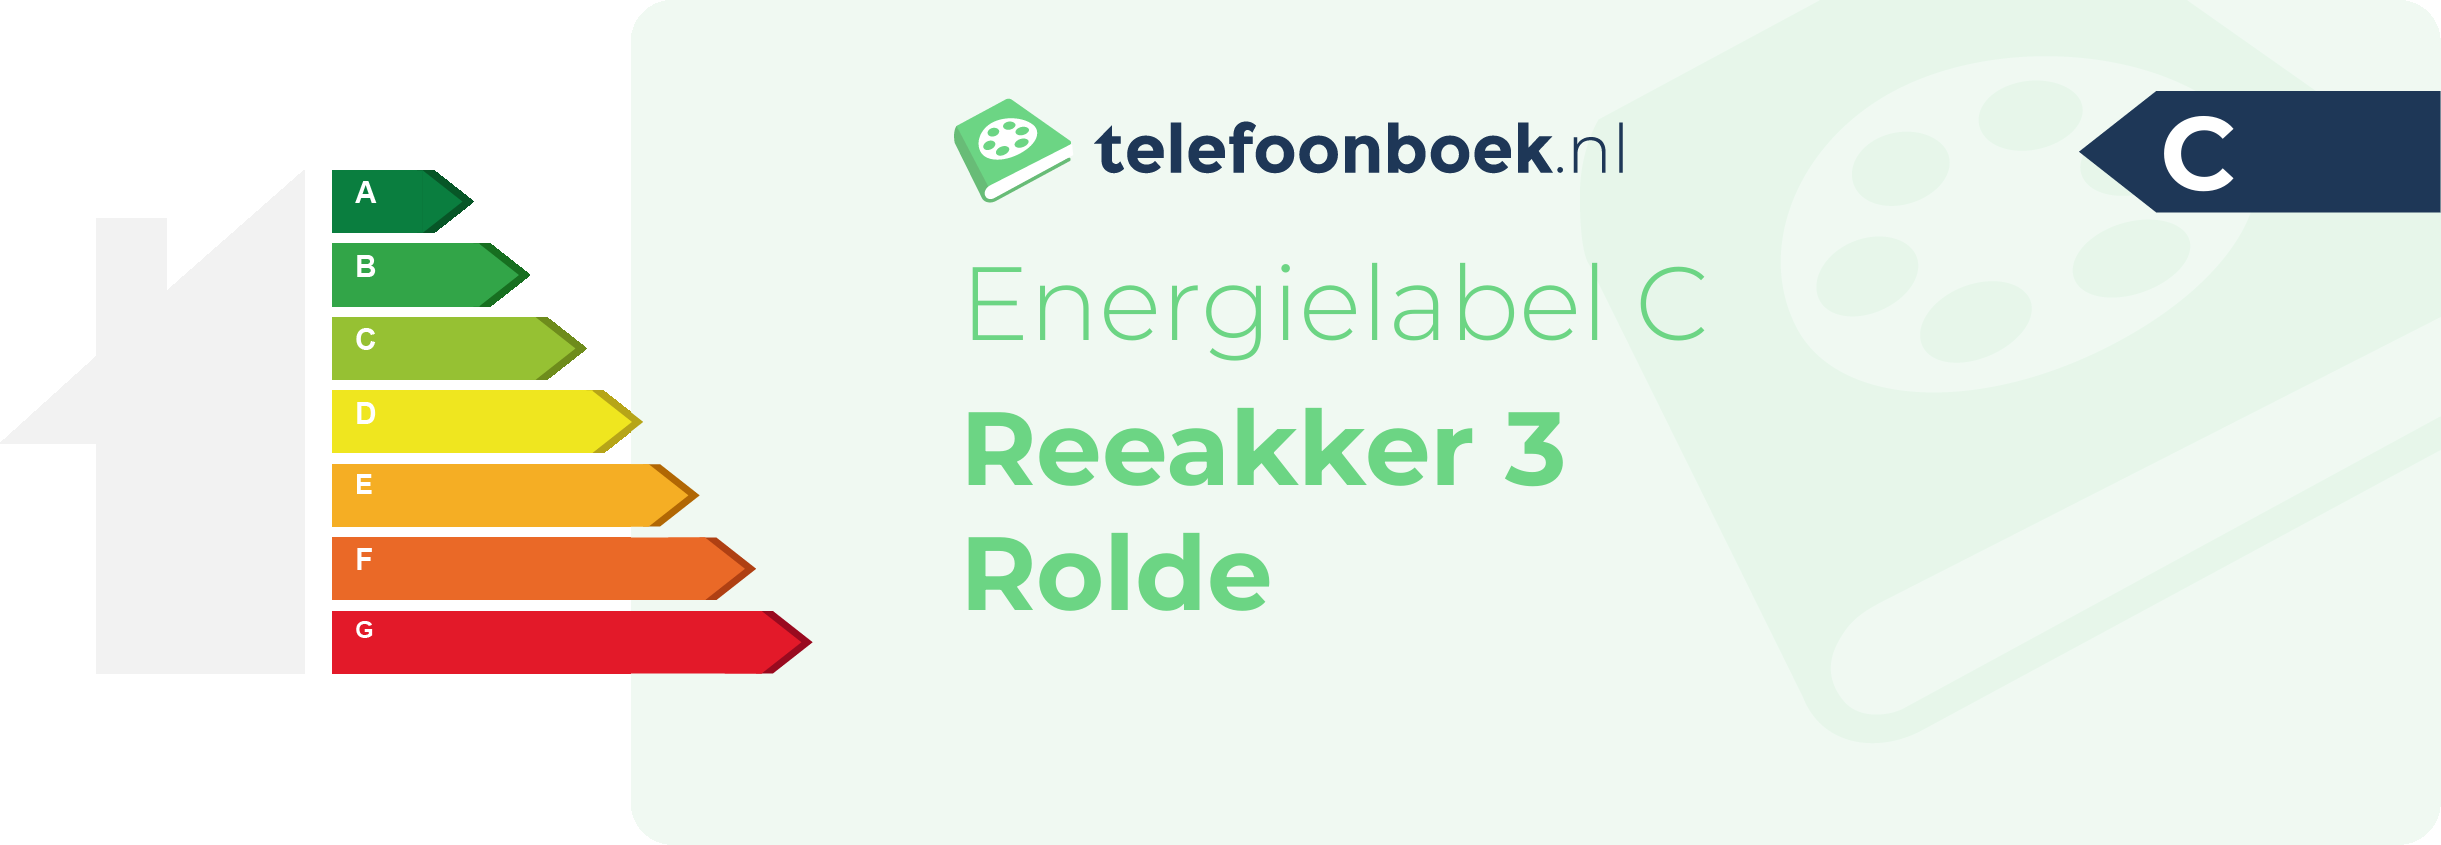 Energielabel Reeakker 3 Rolde